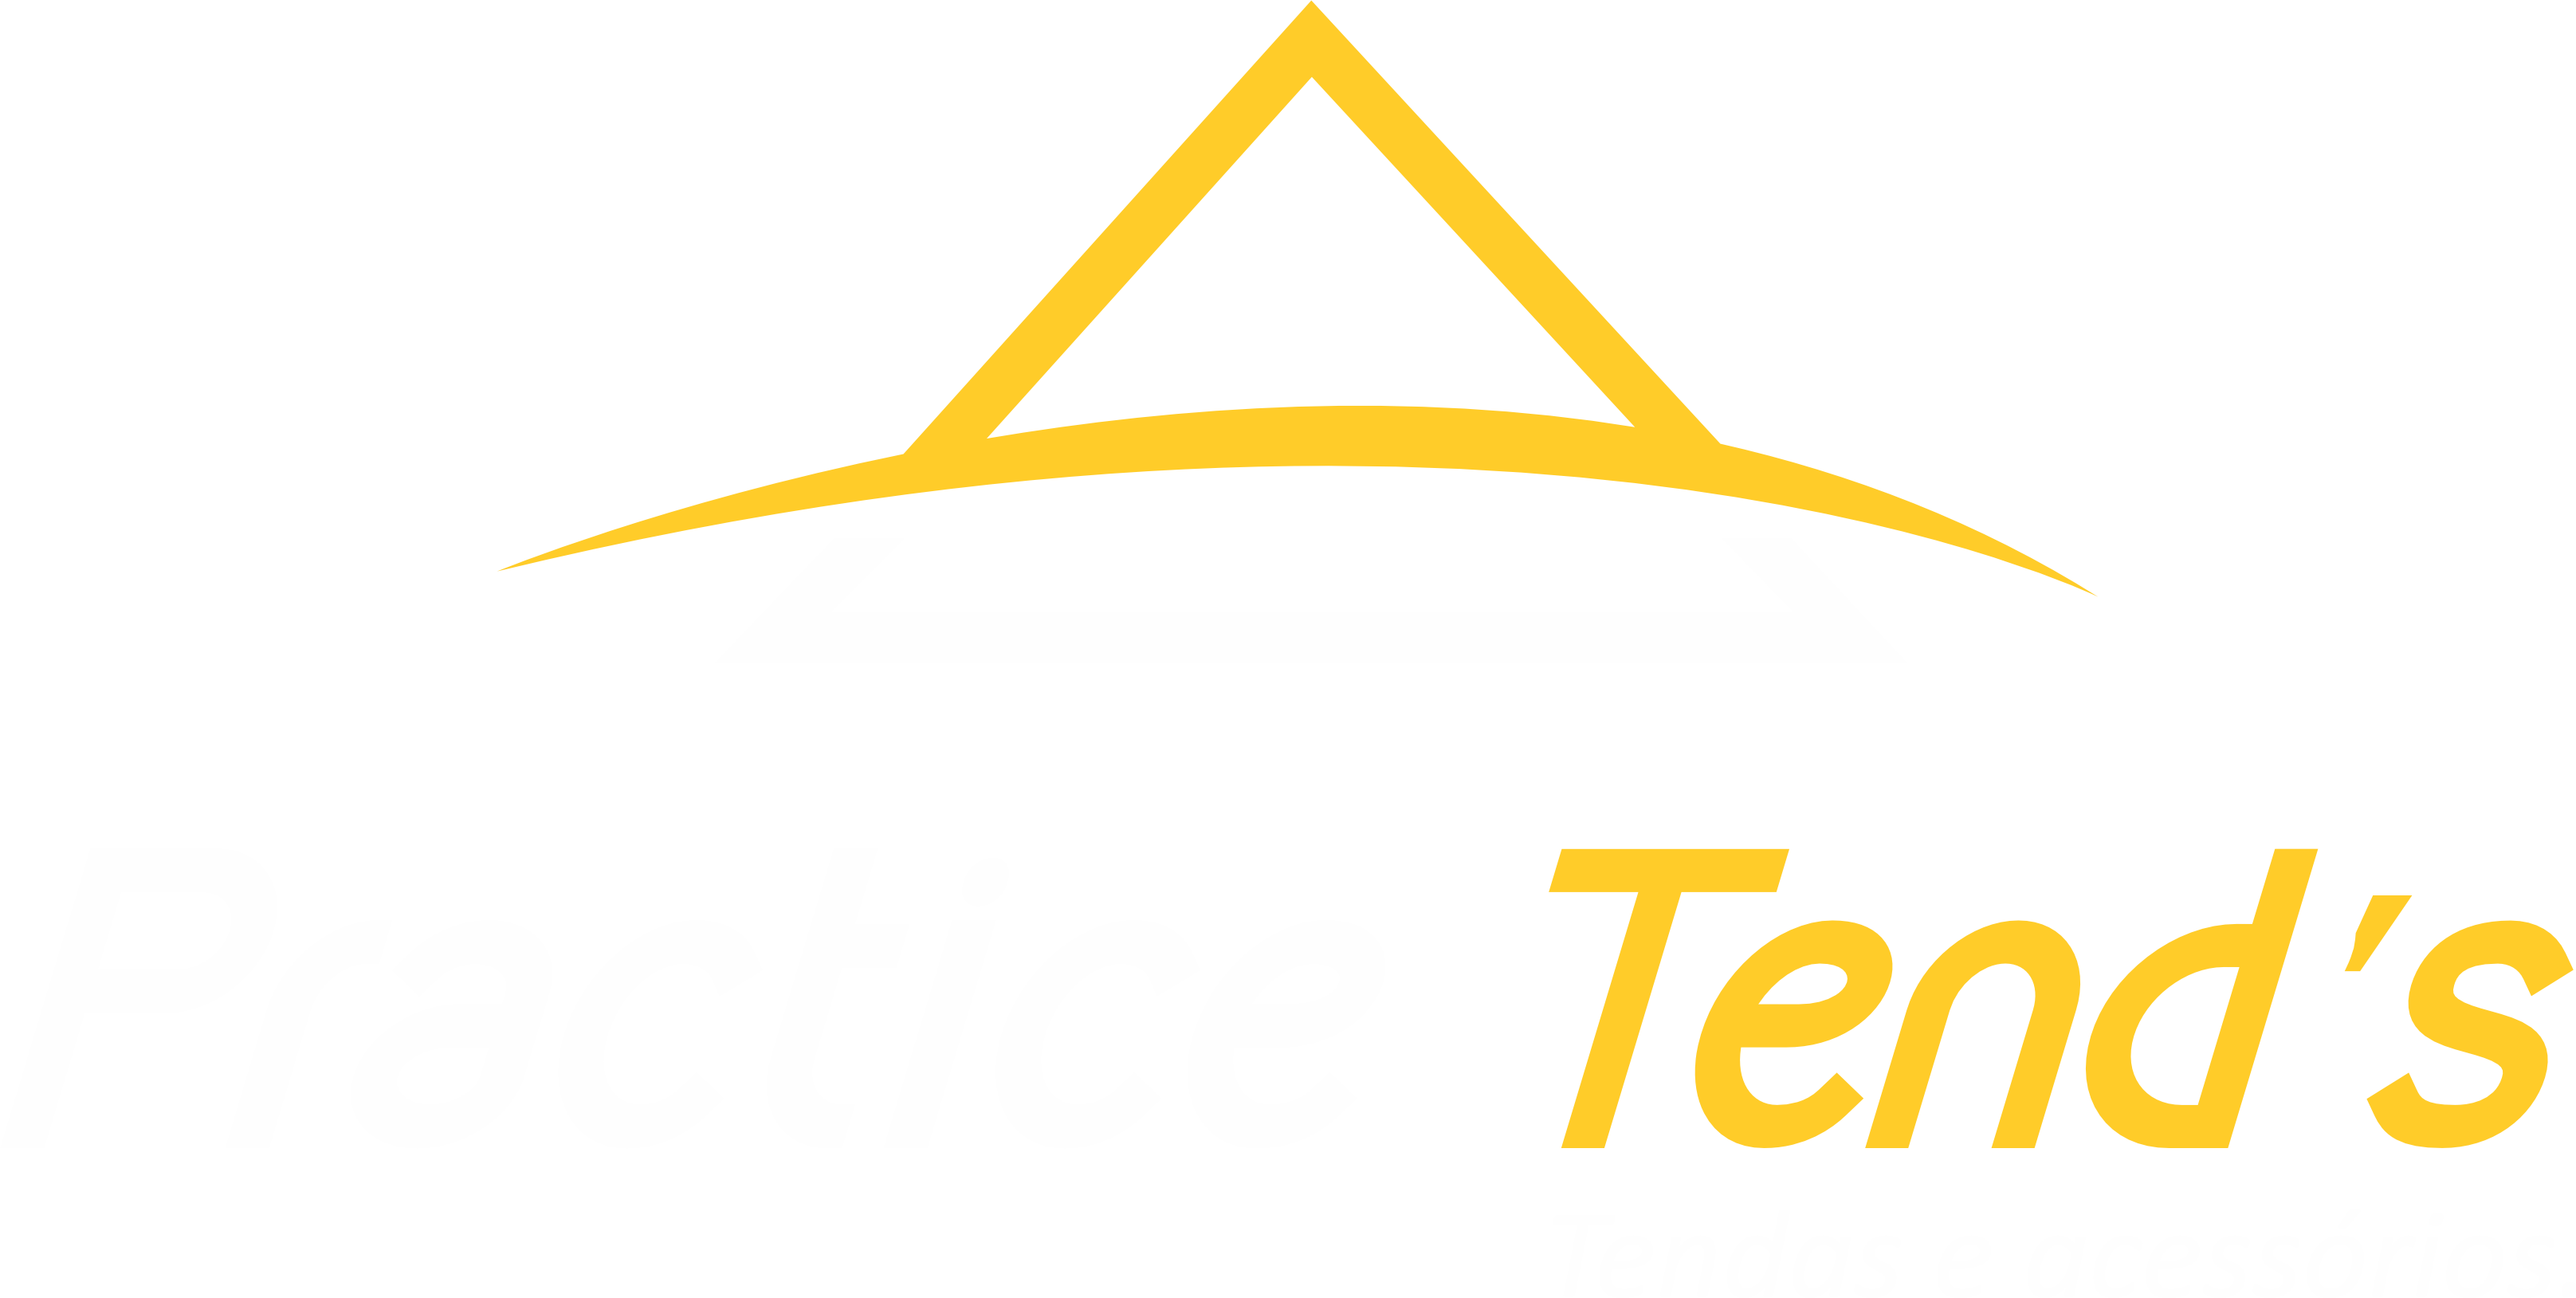 Practice Tend's